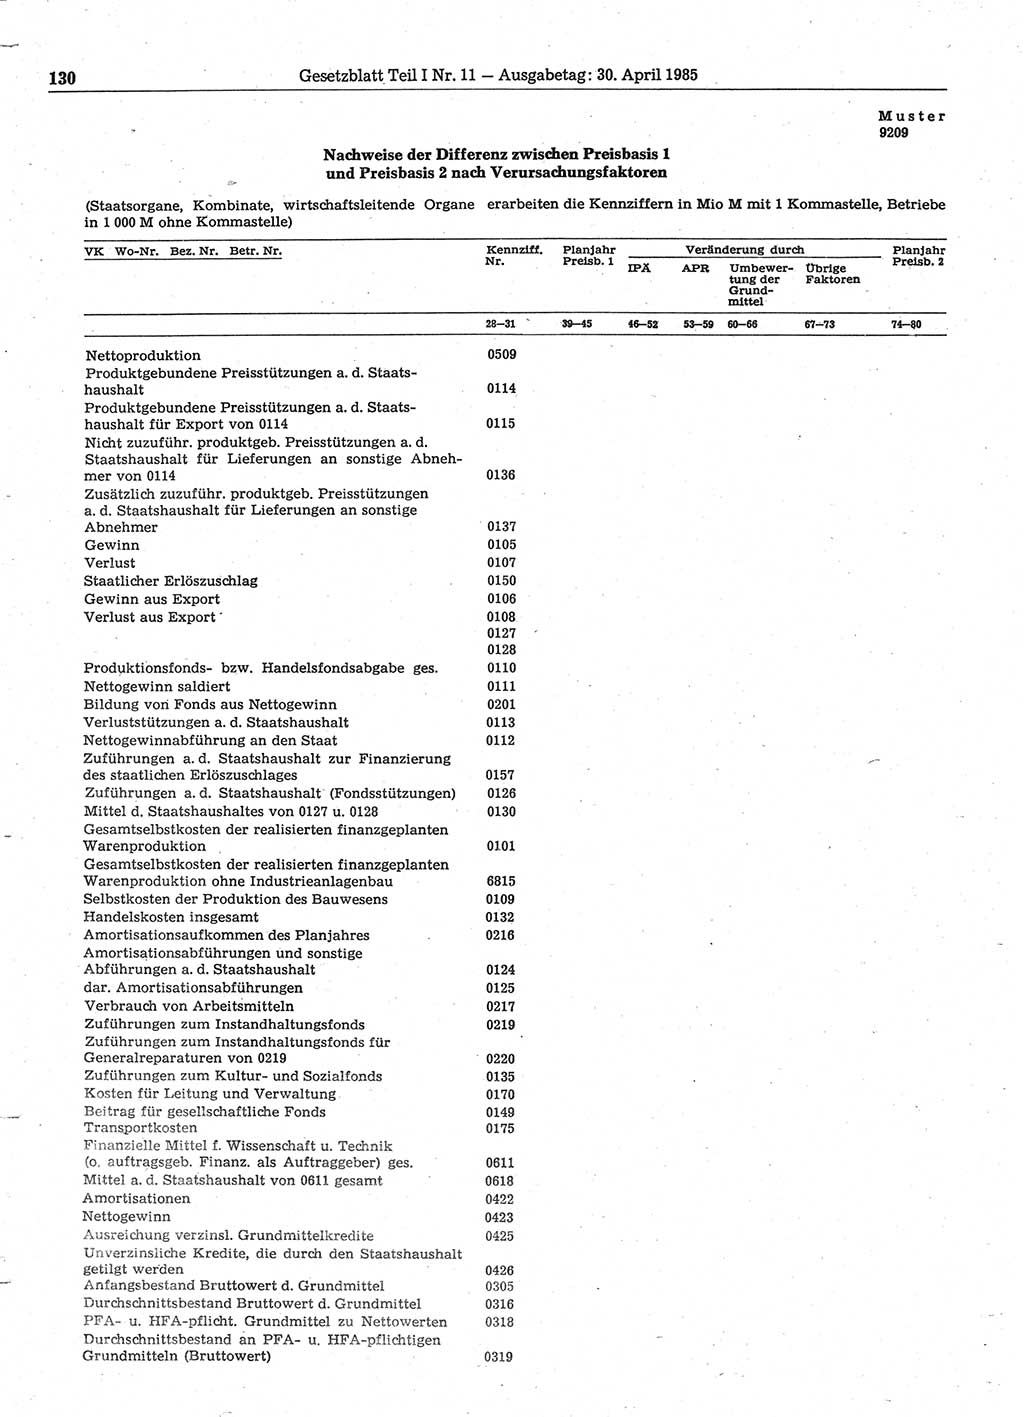 Gesetzblatt (GBl.) der Deutschen Demokratischen Republik (DDR) Teil Ⅰ 1985, Seite 130 (GBl. DDR Ⅰ 1985, S. 130)